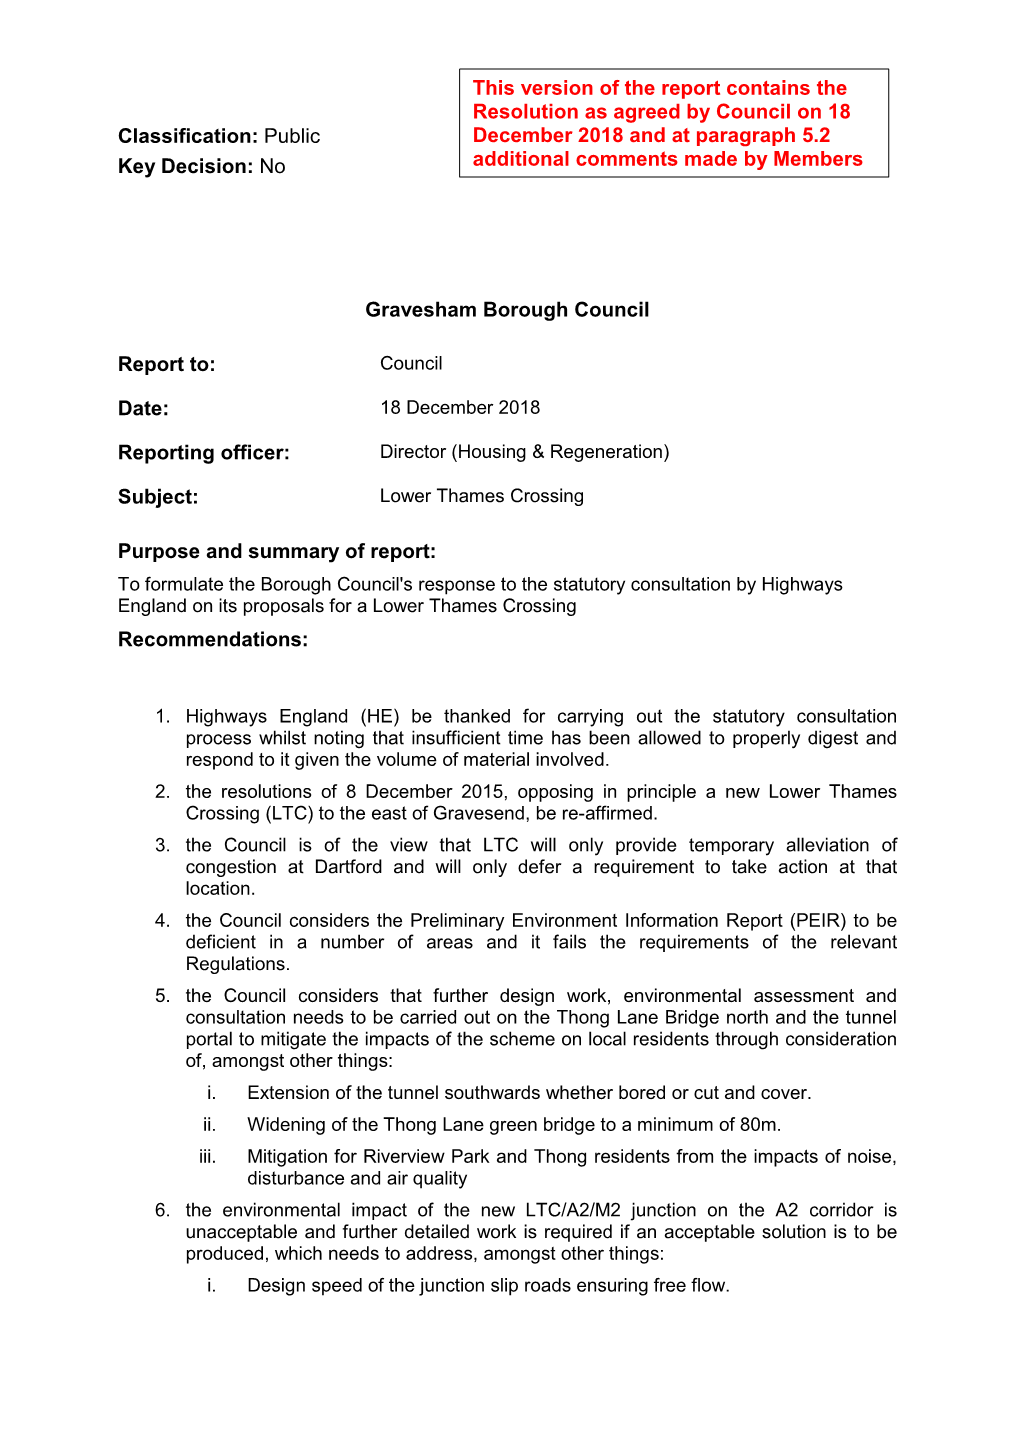 No Gravesham Borough Council Report To